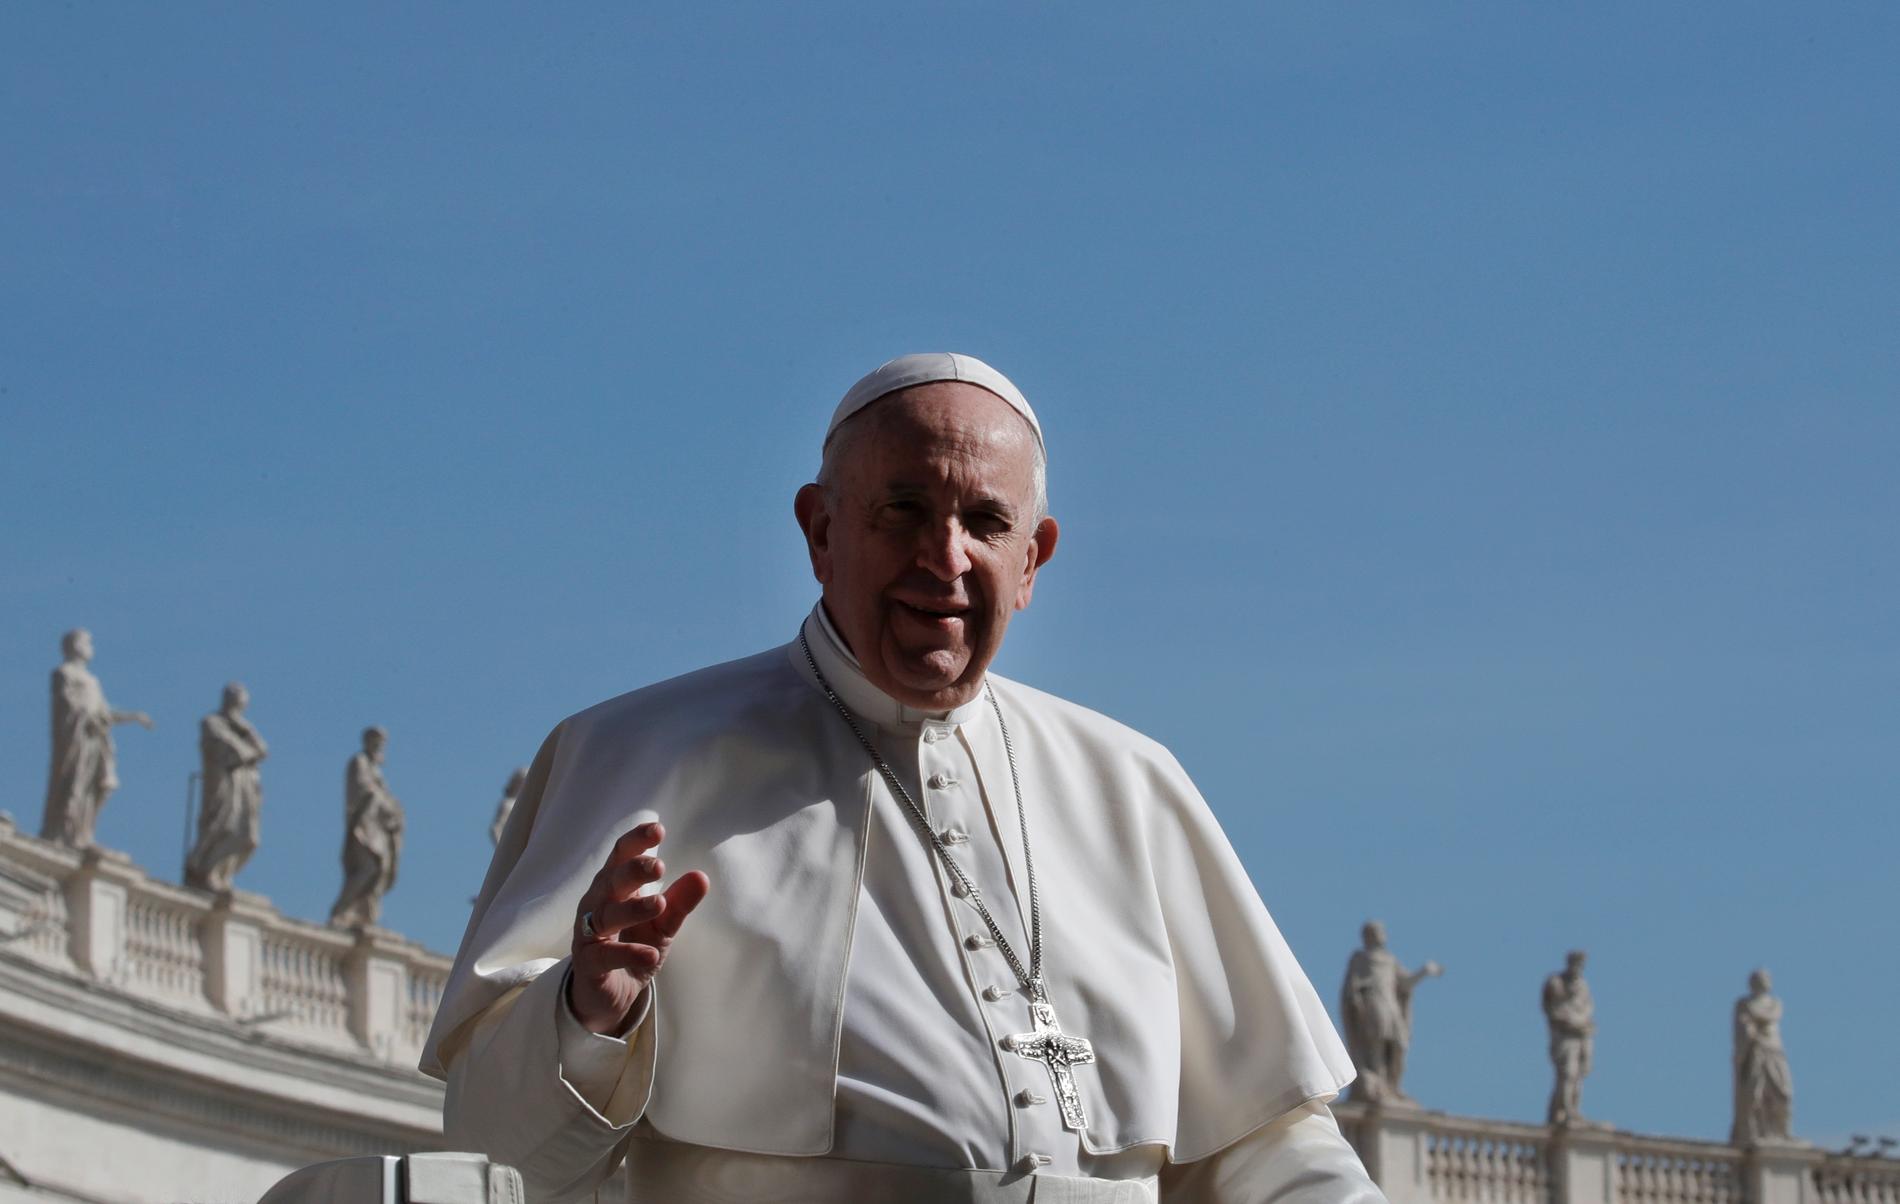 Påve Franciskus inför anmälningsplikt vid misstanke om sexuella övergrepp. Arkivbild.